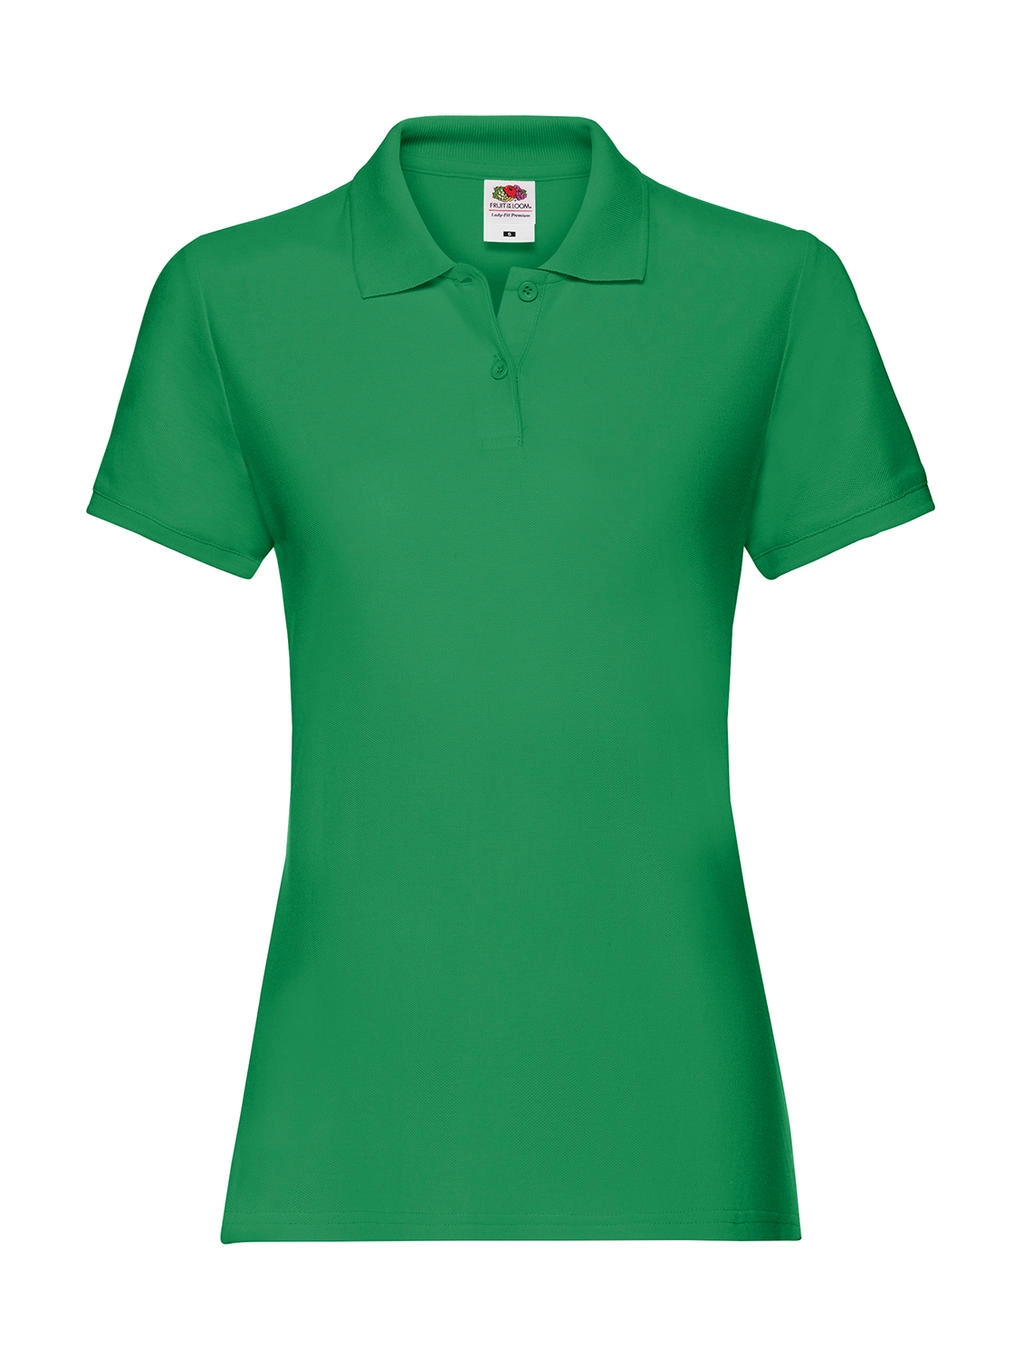 Ladies` Premium Polo zum Besticken und Bedrucken in der Farbe Kelly Green mit Ihren Logo, Schriftzug oder Motiv.